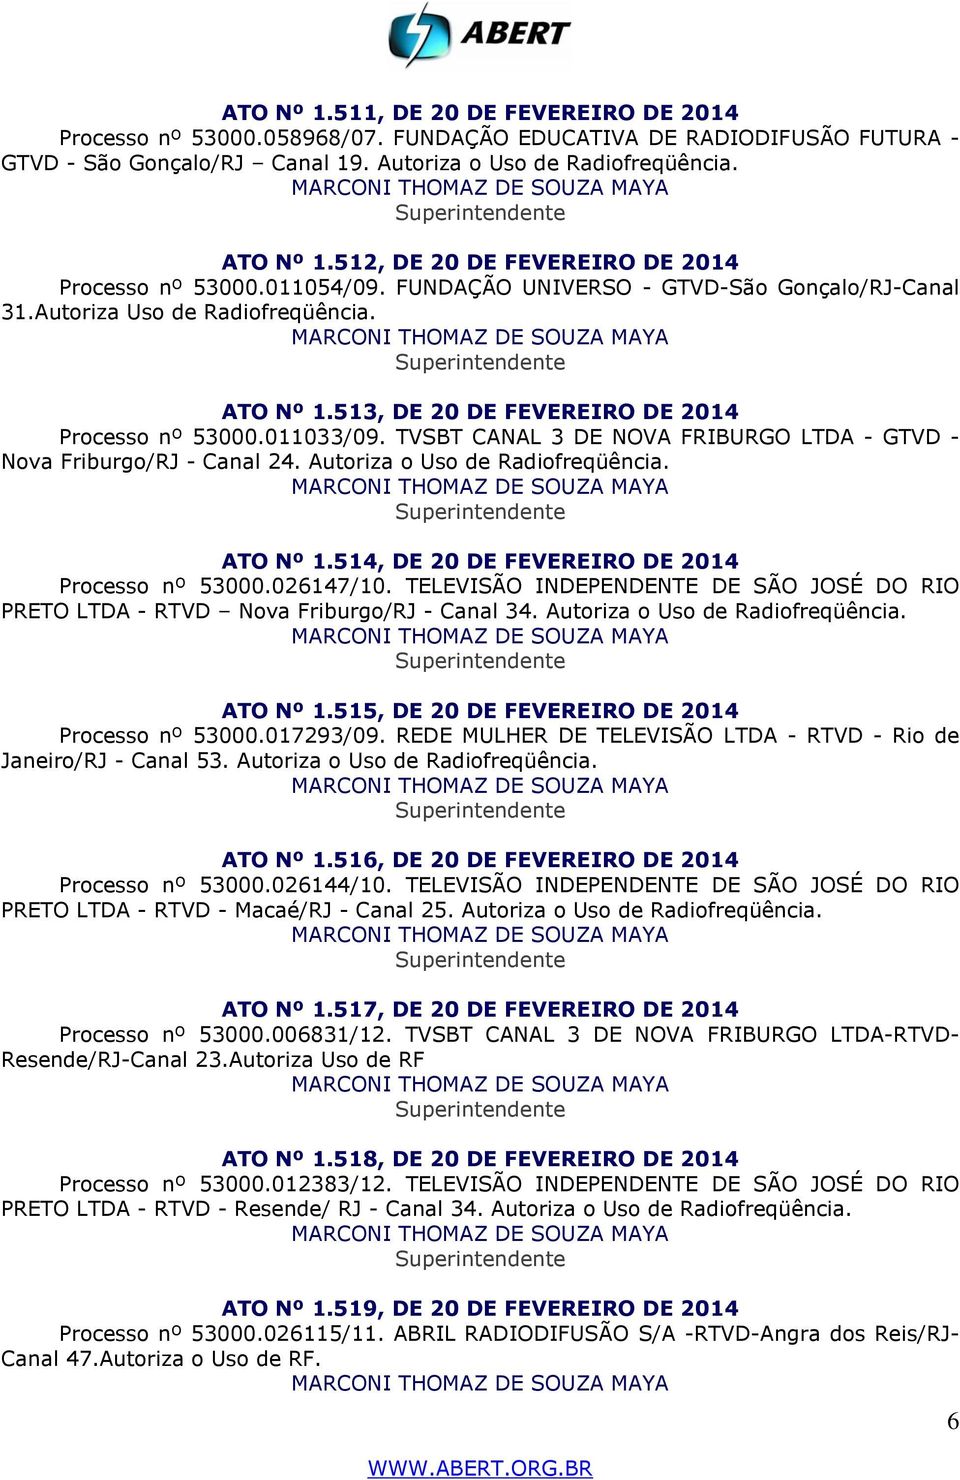 513, DE 20 DE FEVEREIRO DE 2014 Processo nº 53000.011033/09. TVSBT CANAL 3 DE NOVA FRIBURGO LTDA - GTVD - Nova Friburgo/RJ - Canal 24. Autoriza o Uso de Radiofreqüência. ATO Nº 1.